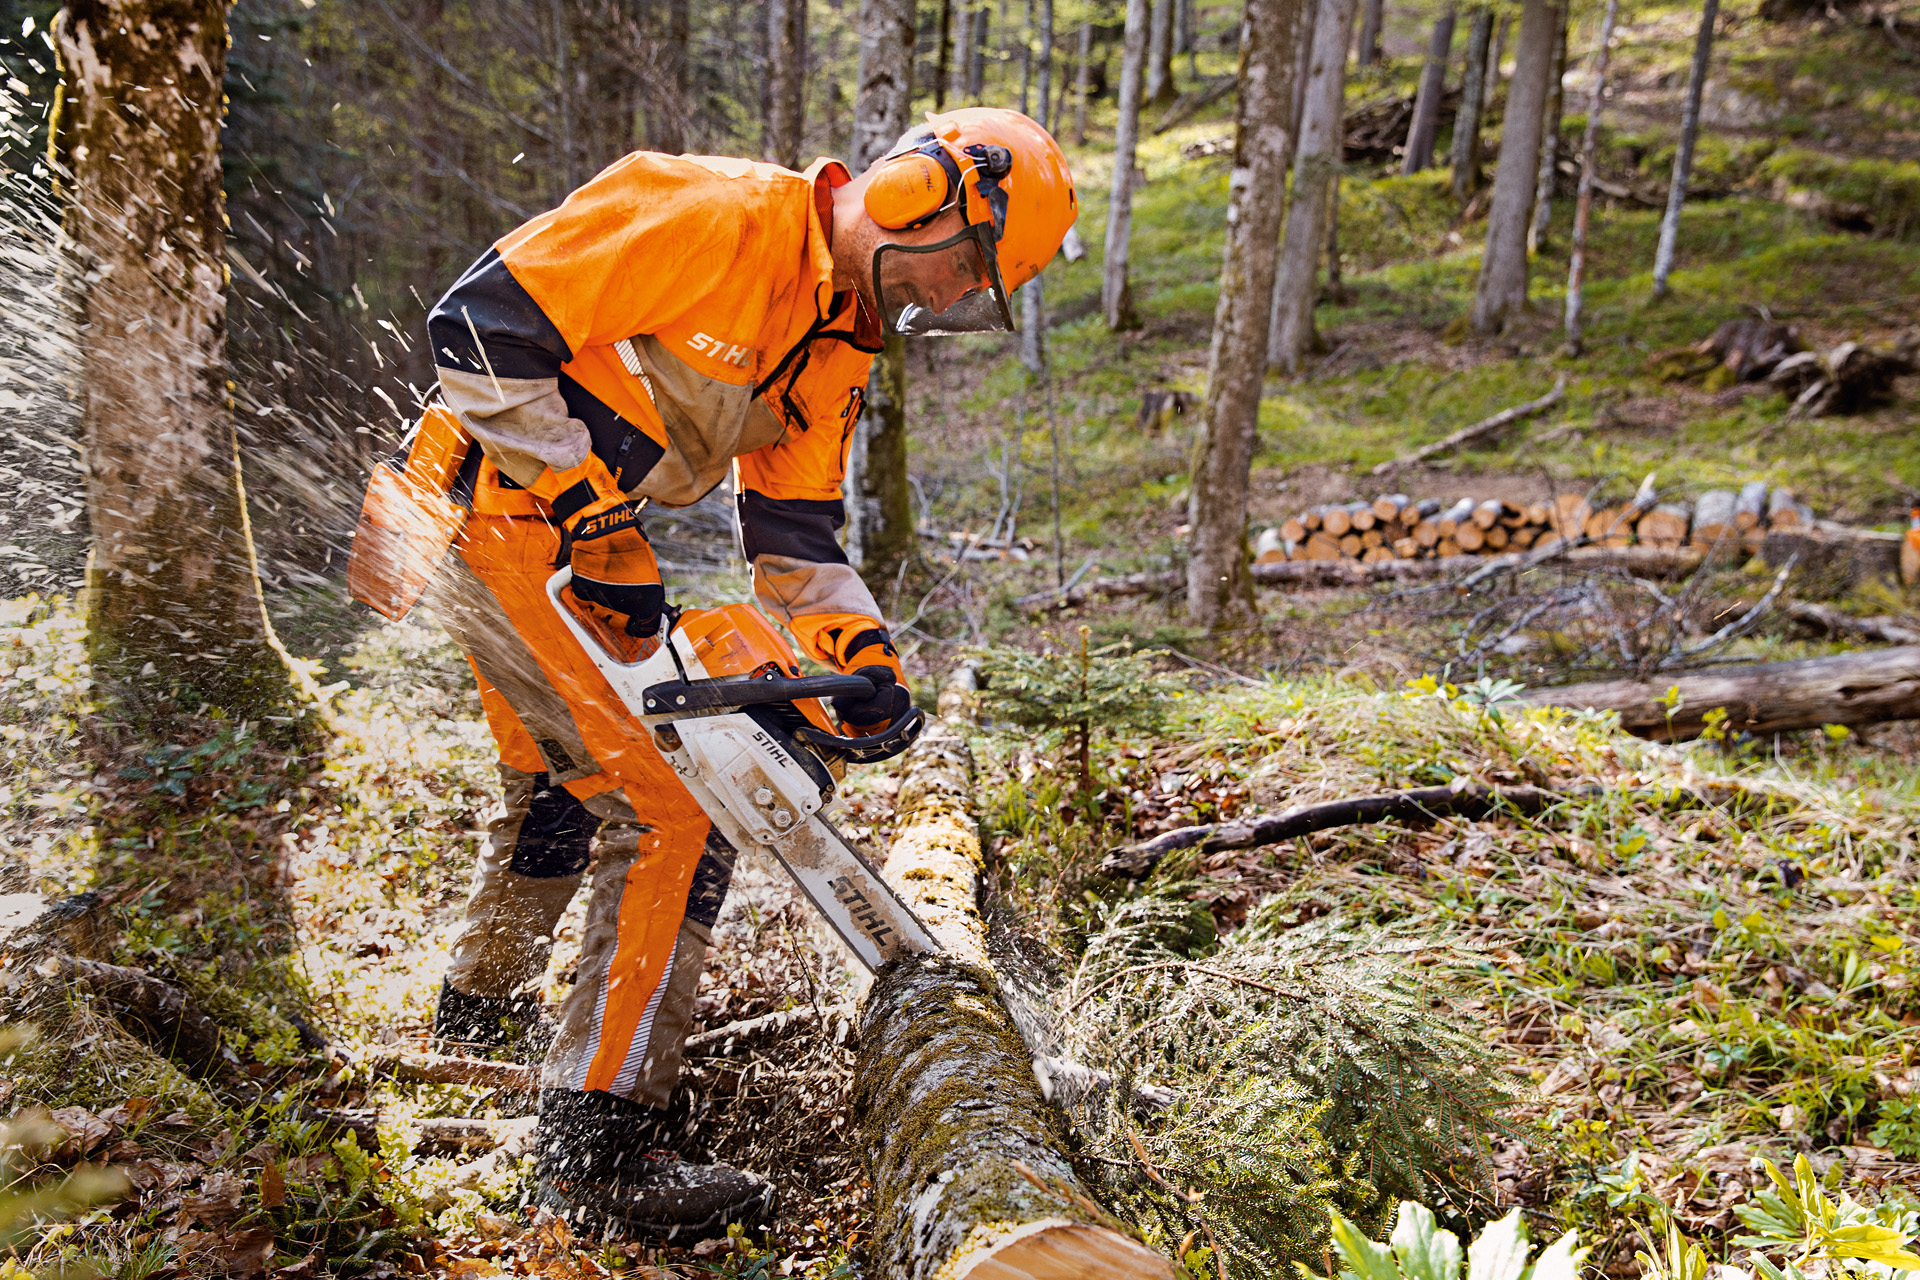 Skovarbejder i STIHL sikkerhedstøj skærer træ i skoven med en STIHL motorsav